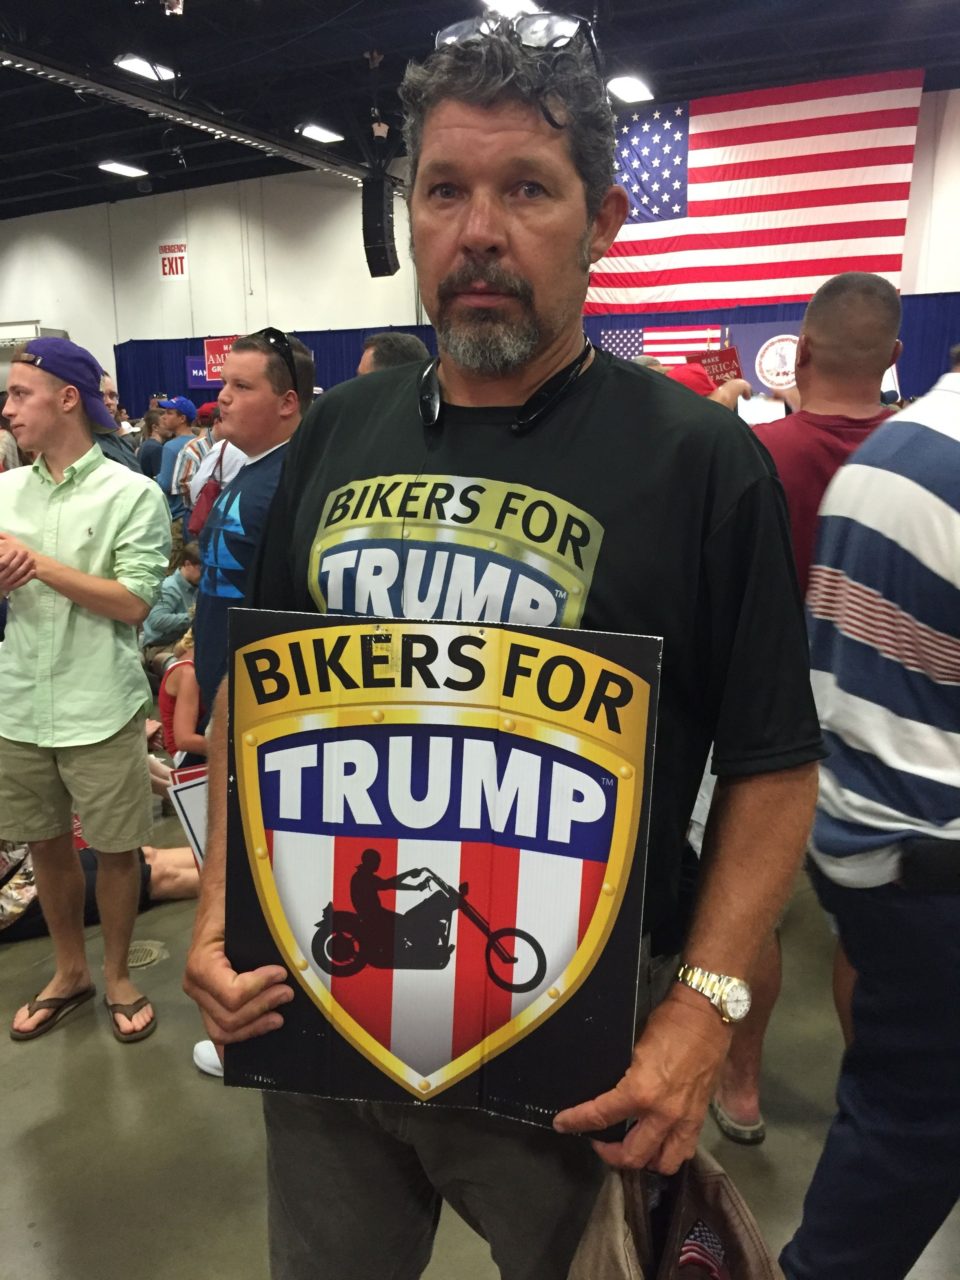 Biker for Trump